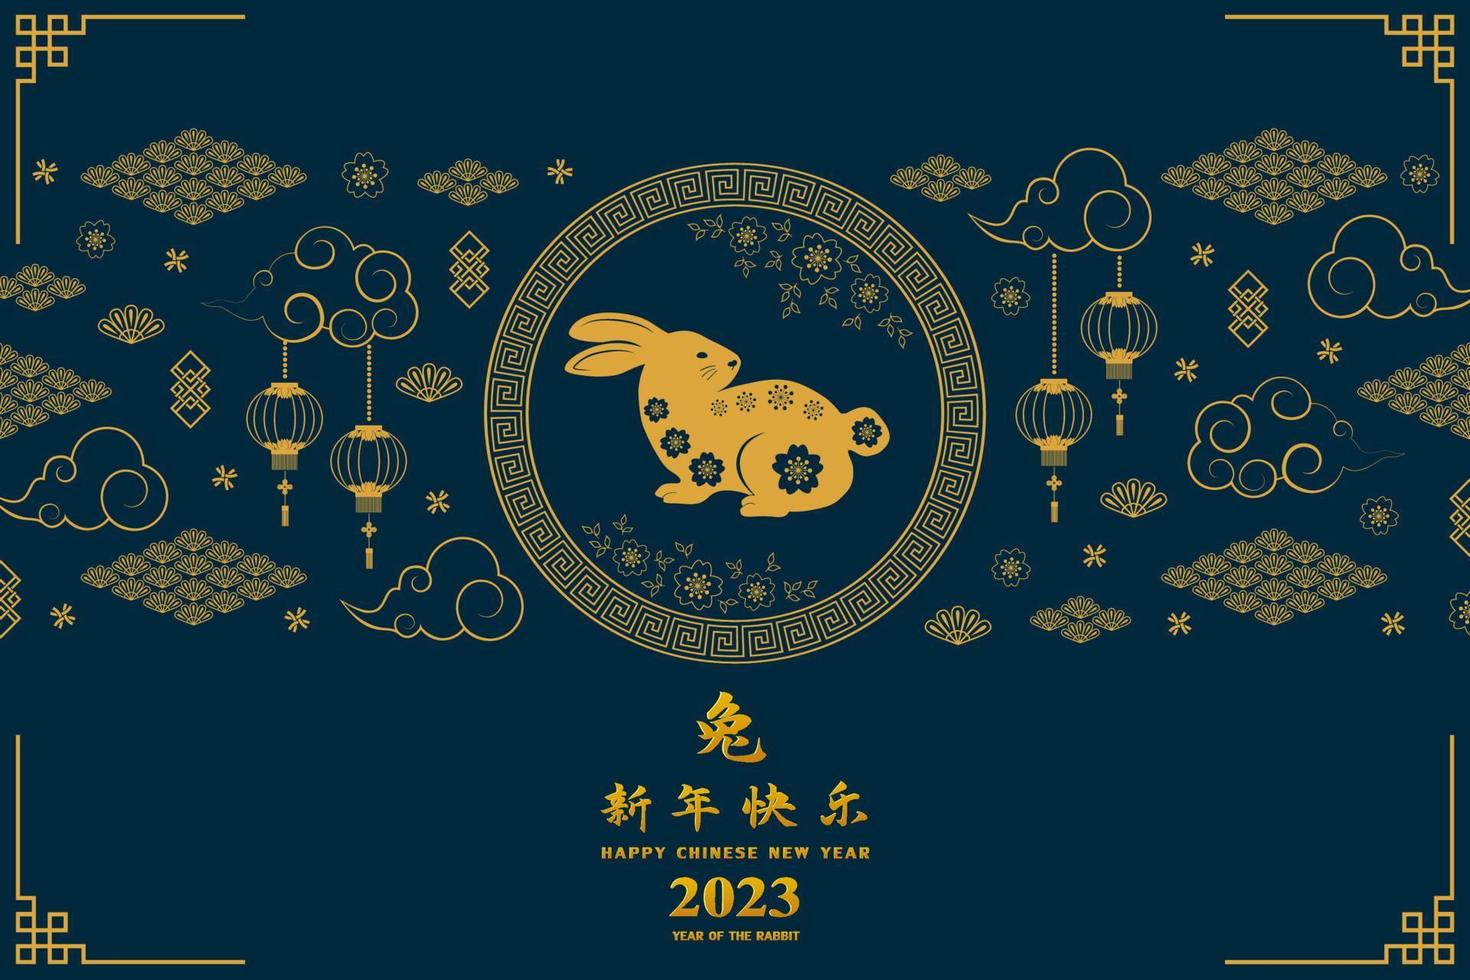 contento Cinese nuovo anno 2023, anno di il coniglio con elementi su asiatico stile vettore